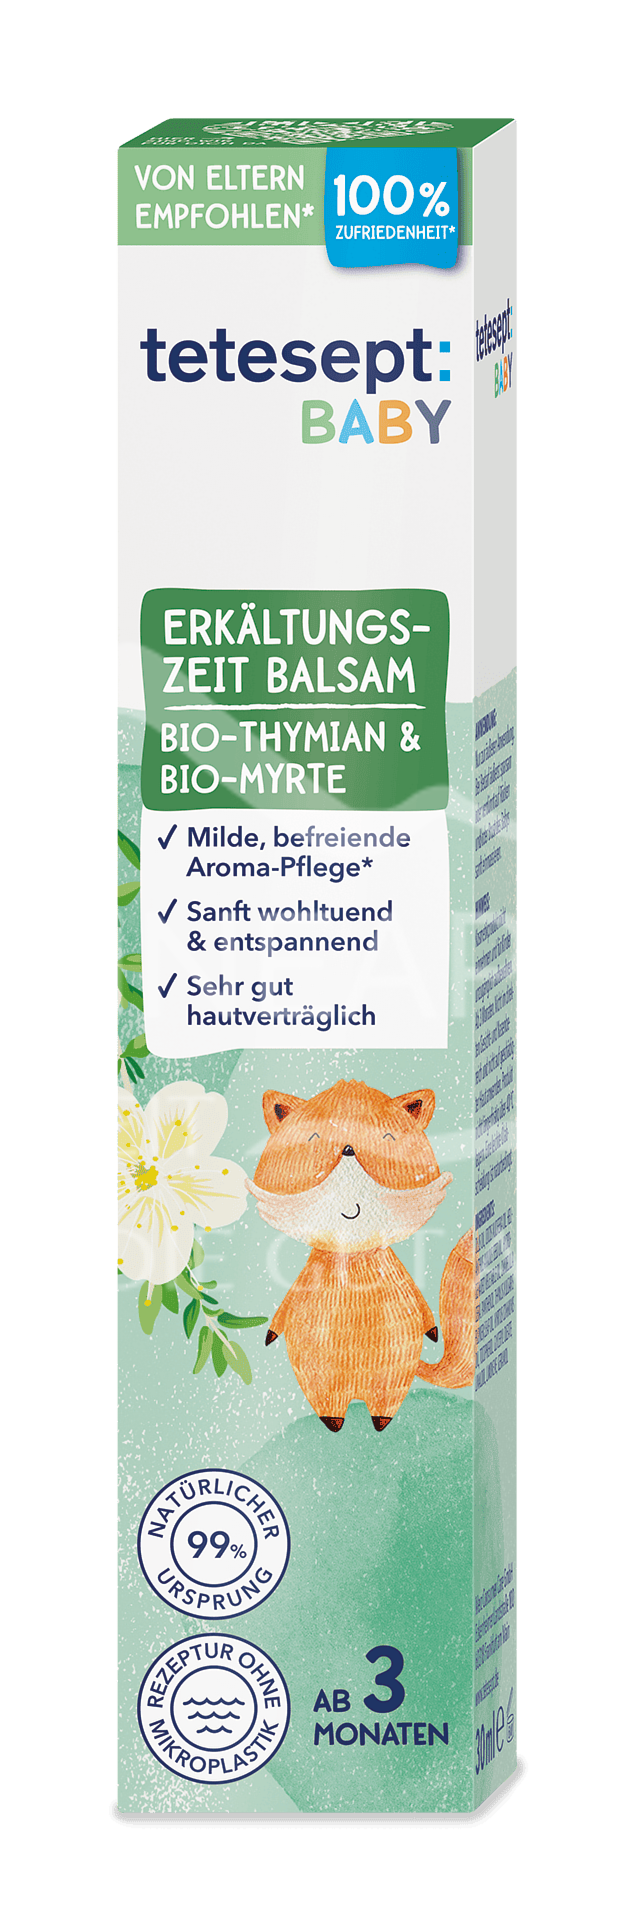 tetesept BABY Erkältungszeit Balsam mit Bio-Thymian & Bio-Myrte